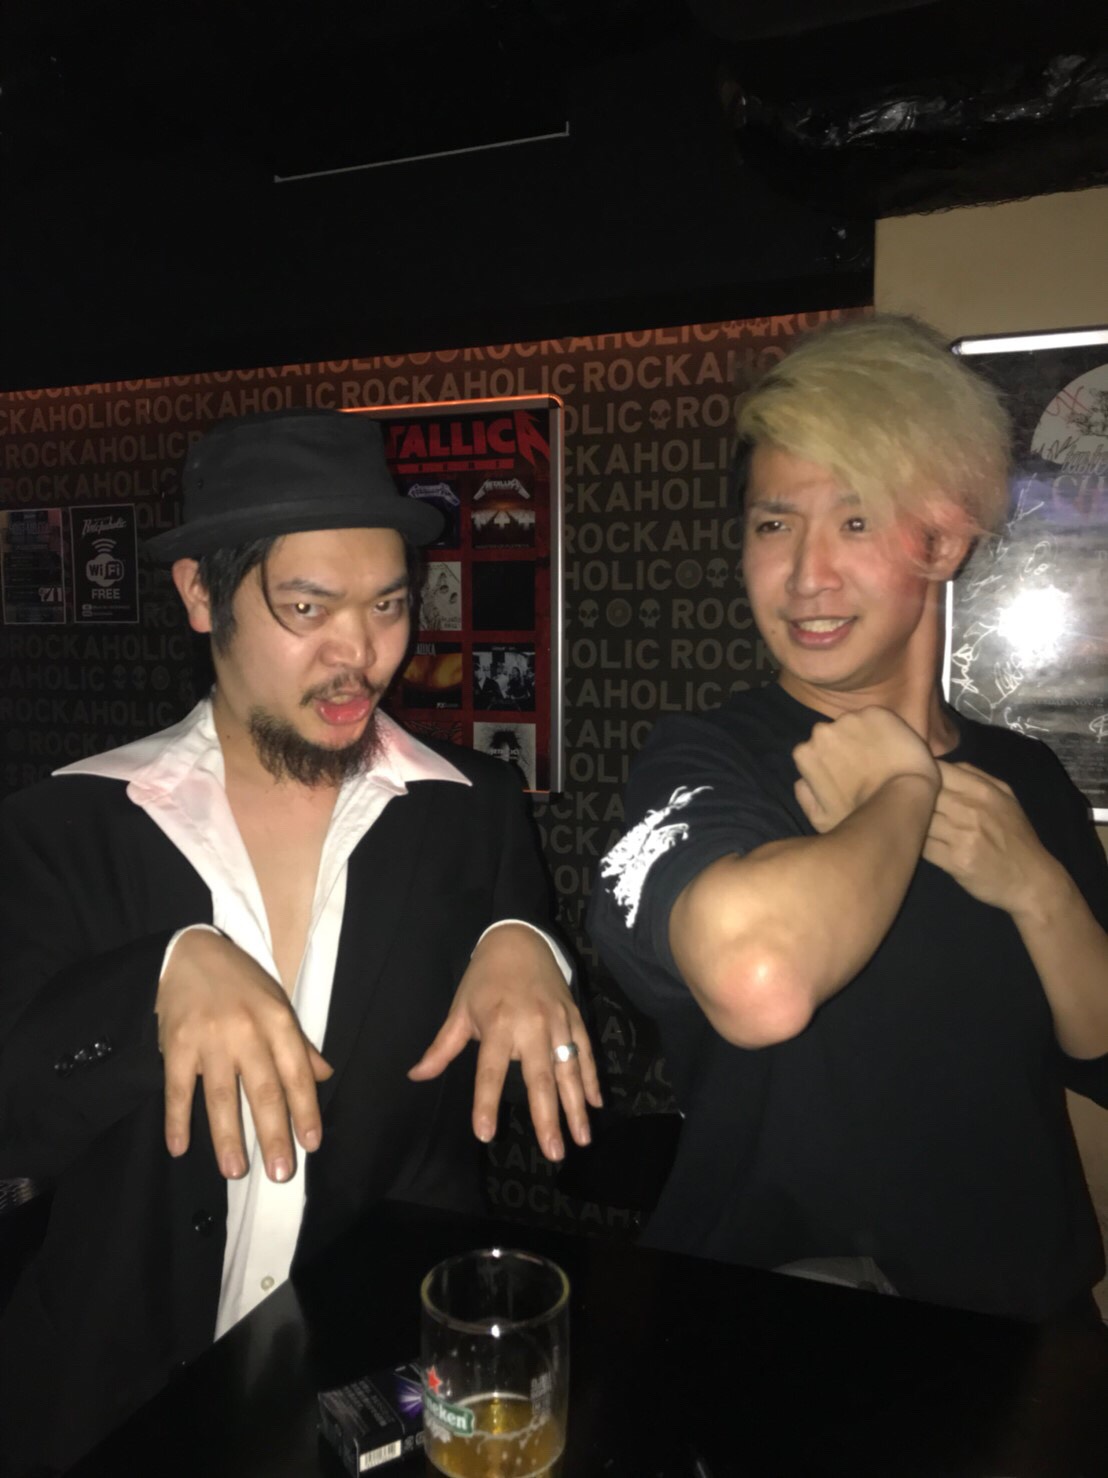 https://bar-rockaholic.jp/shibuya/blog/S__9814033.jpg